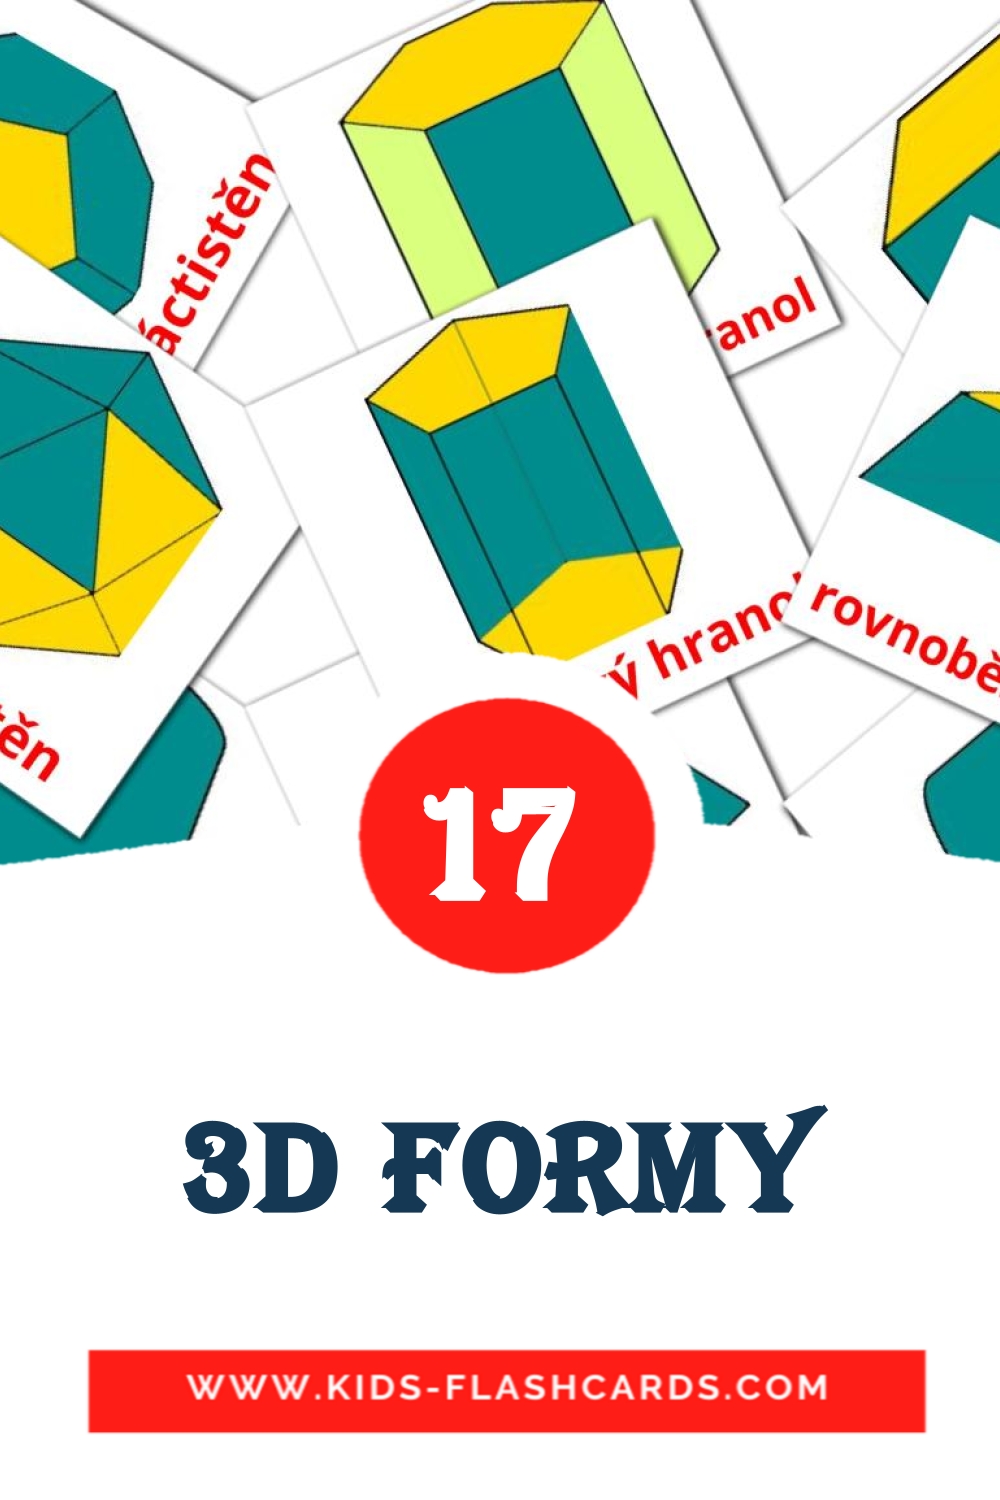 17 Cartões com Imagens de 3D formy para Jardim de Infância em czech